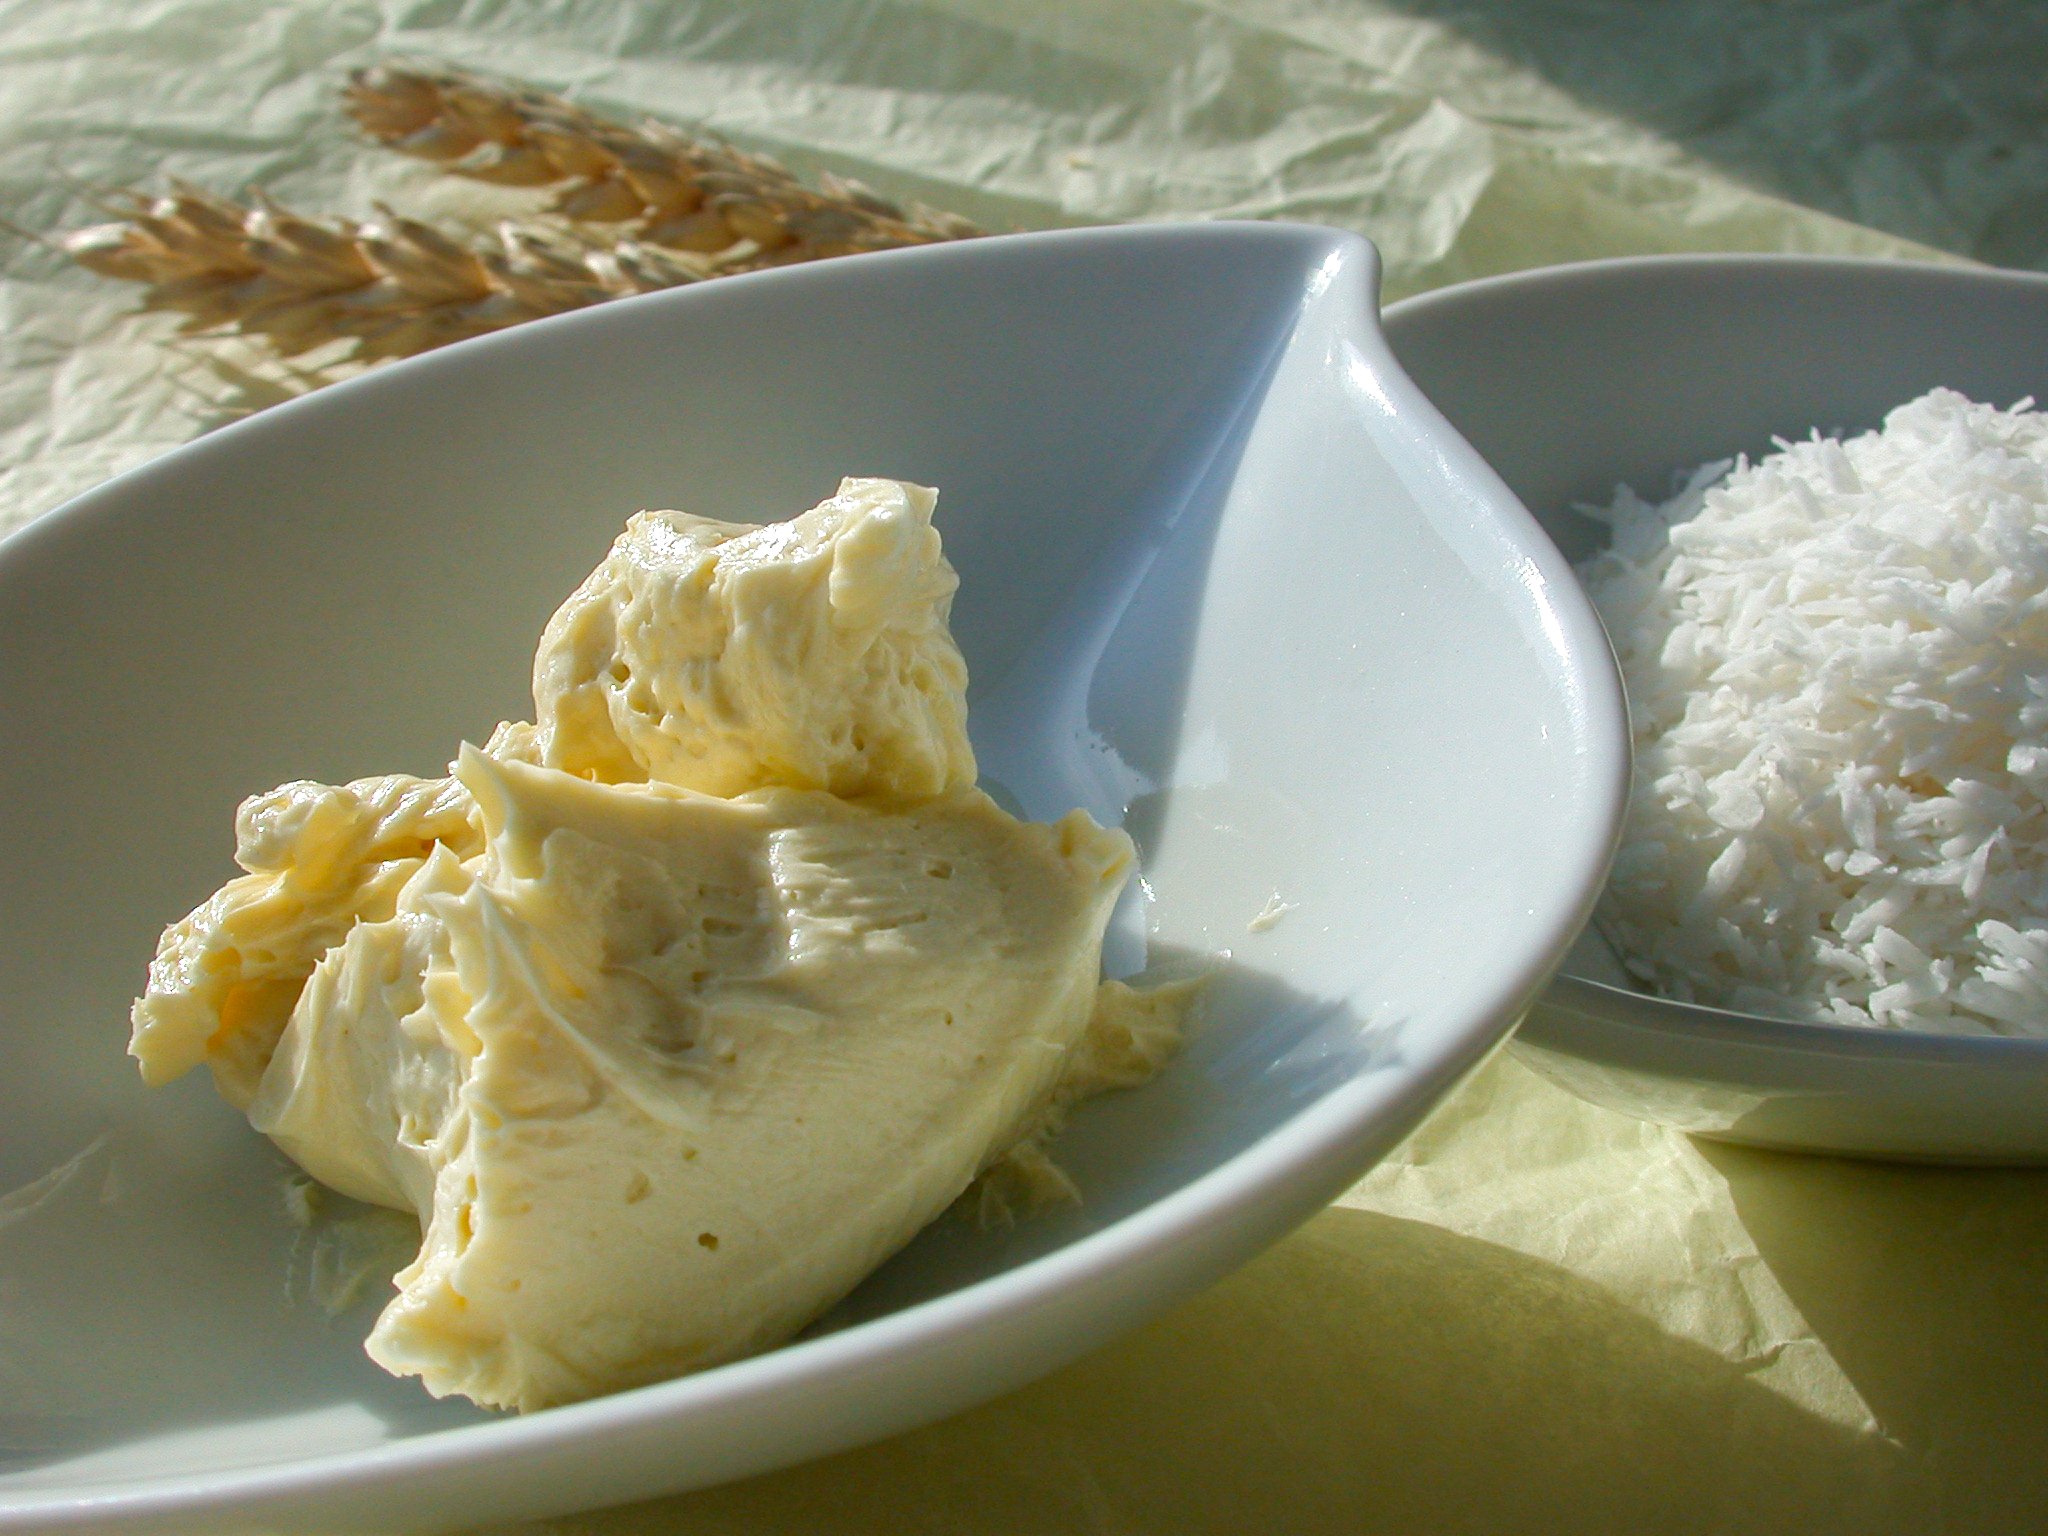 Beurre fouetté nourrissant "peau de croco"au karité